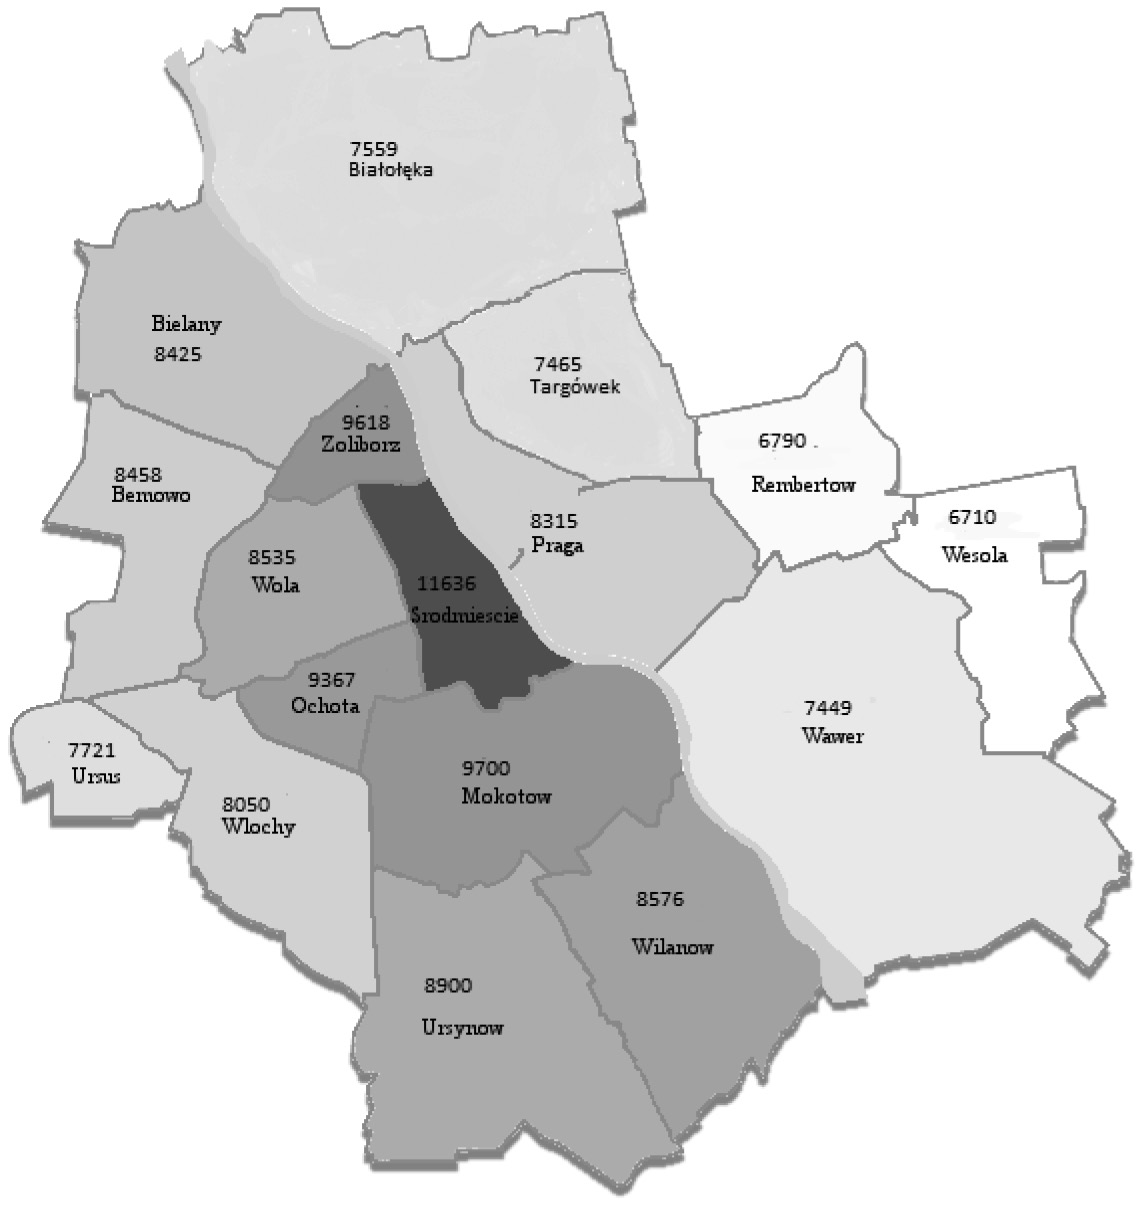 266 Mariola Chrzanowska 2. Materiał badawczy Badaniem objęto 500 mieszkań pochodzących z warszawskiego wtórnego rynku mieszkaniowego.